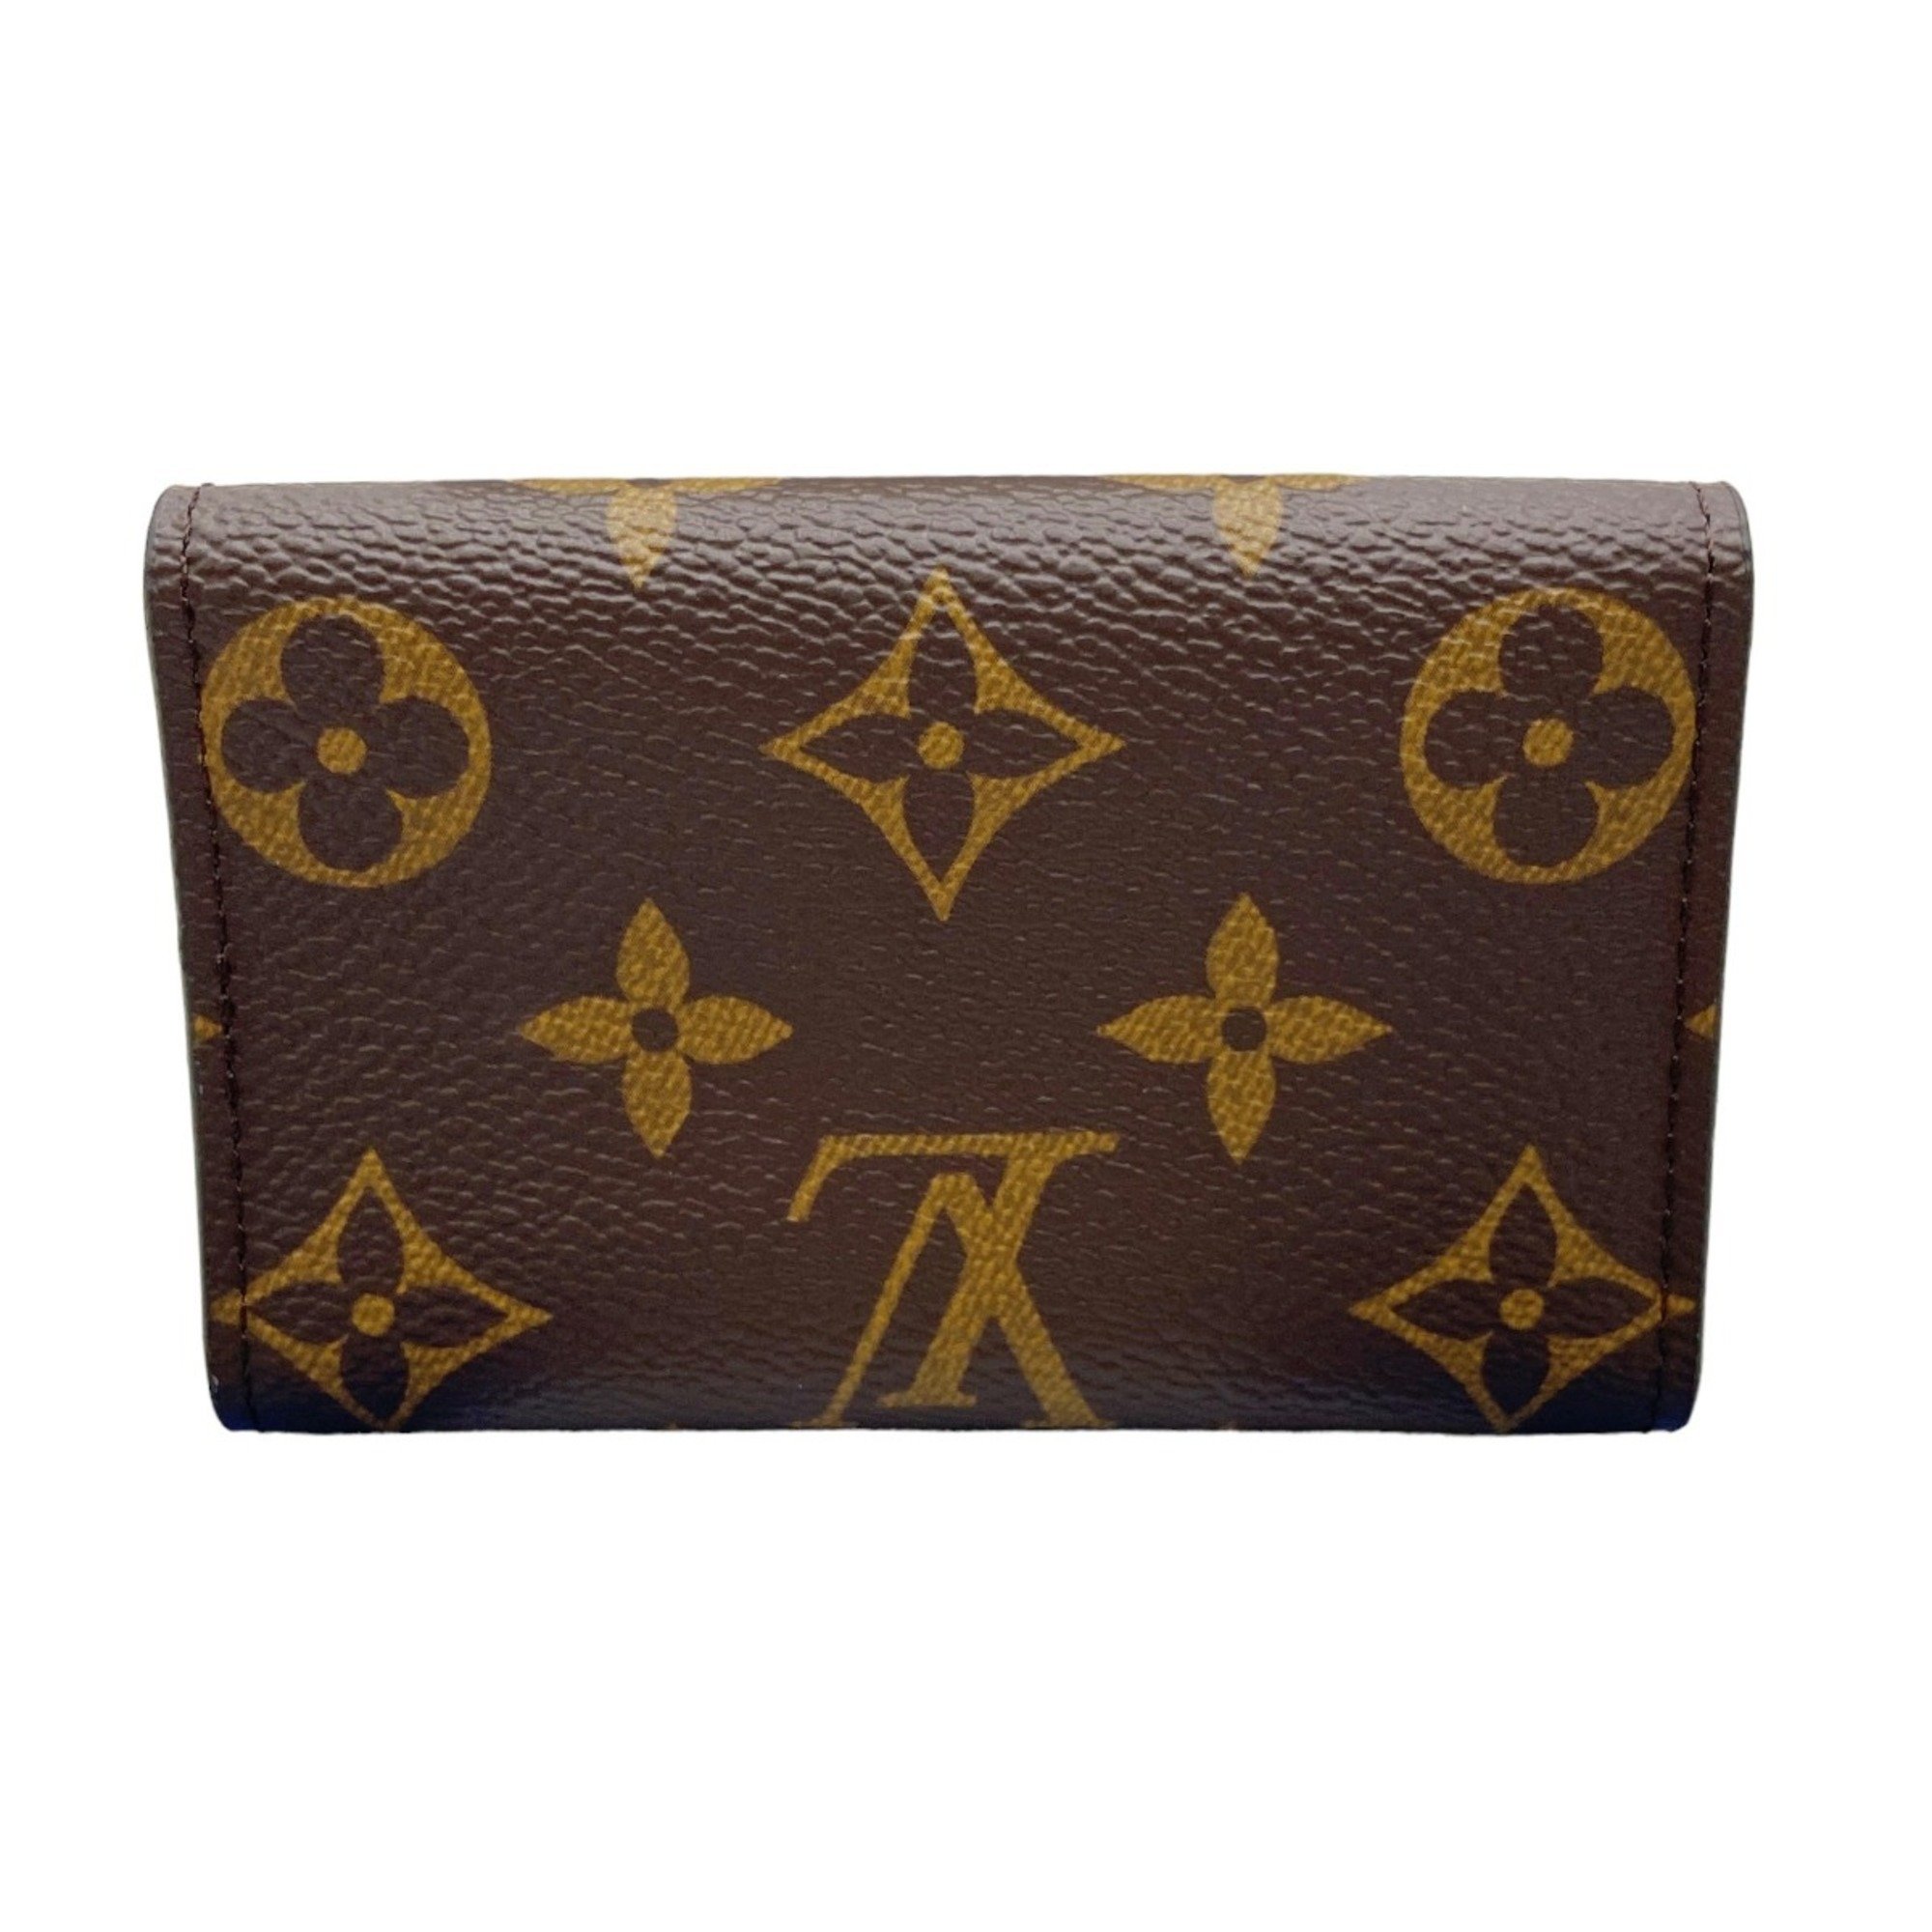 LOUIS VUITTON Louis Vuitton 6 Key Case Monogram Multicle M62630 Brown